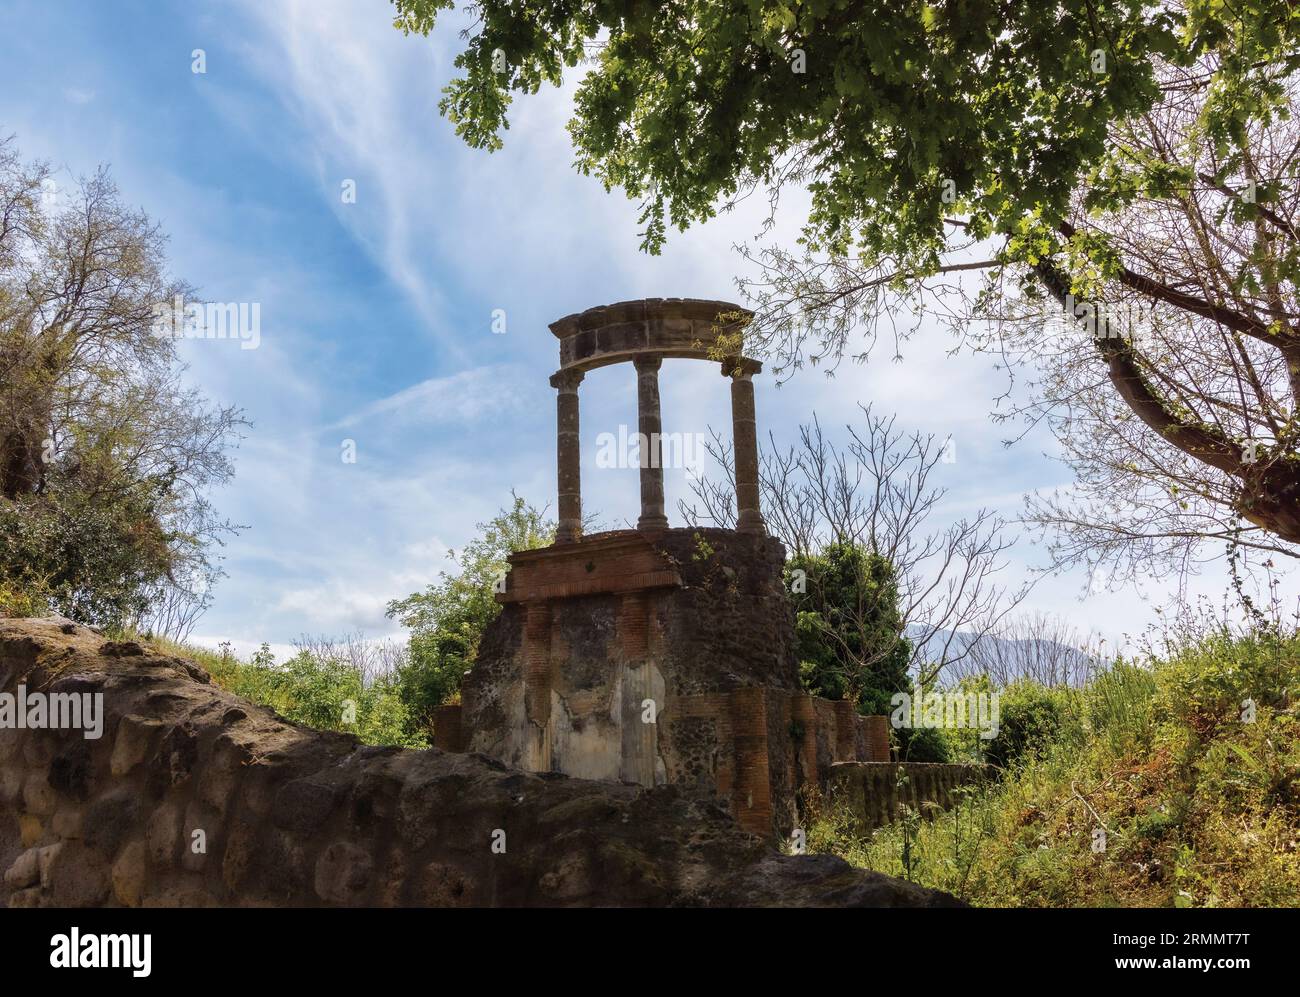 Sito archeologico di Pompei, Campania, Italia. Mausoleo della famiglia Istacidi presso la necropoli di porta Ercolano. Pompei, Ercolano e Torre Foto Stock